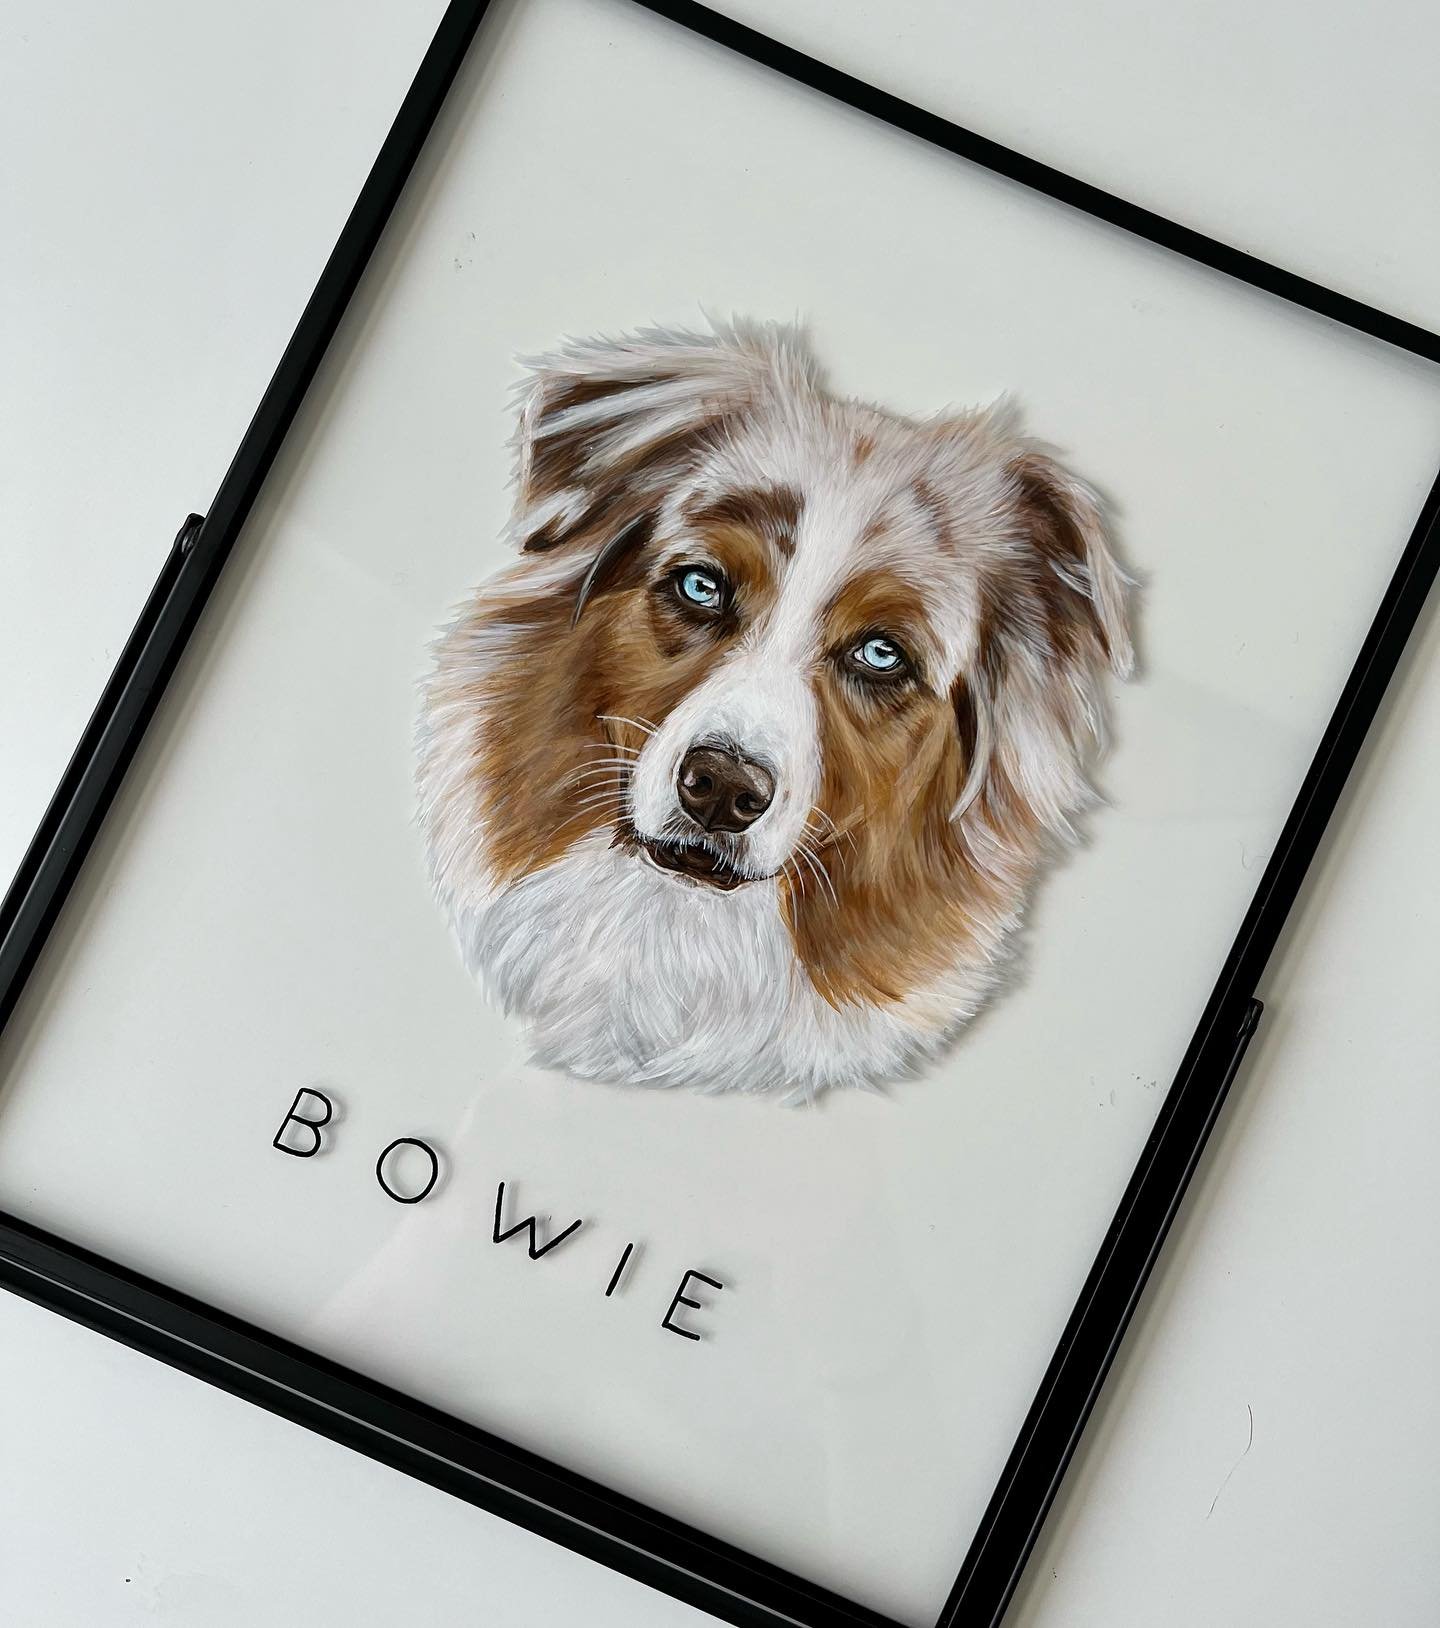 Wishing you all a happy sunday. ☀️

*Bowie schilderde ik in een rechthoek lijstje van 20x25 cm

🏷️
#art #artworks #artwork #dogart #dogartist #dogartwork #petportrait #petportraits #dogportrait #dogpainting #painting #paintings #aussie #aussielove #